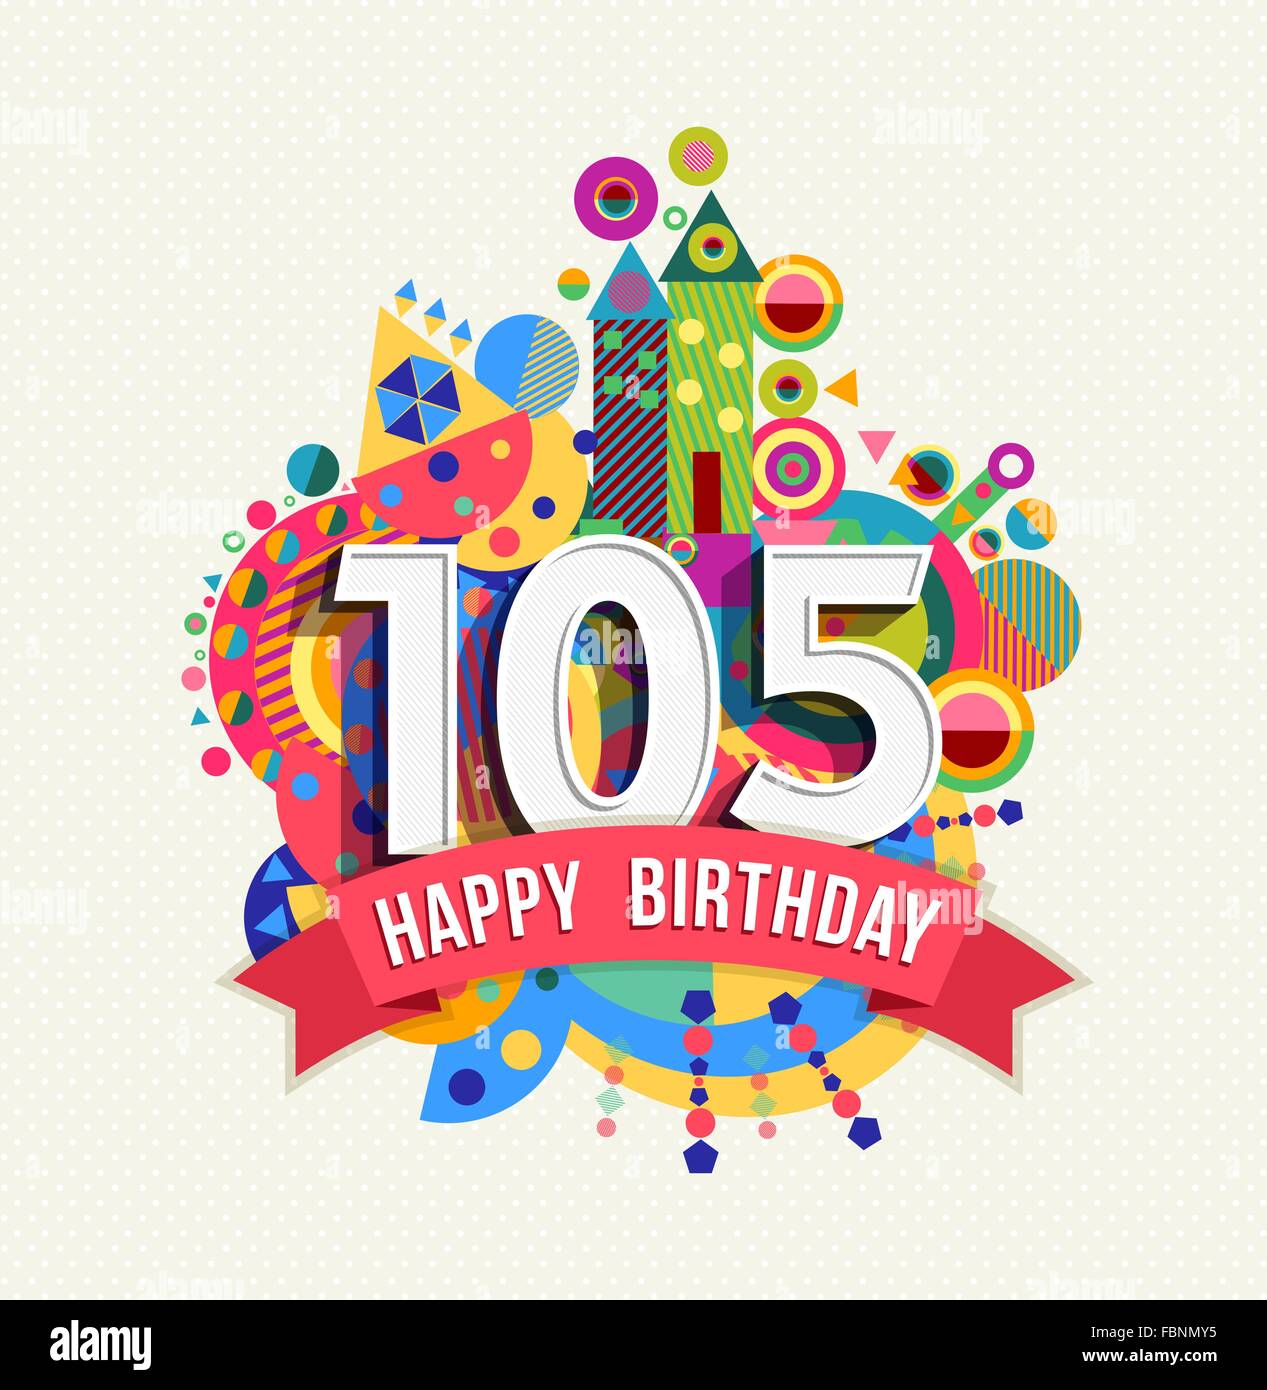 Happy Birthday hundert fünf 105 Jahr Spaß Feier Geburtstag Grußkarte mit Nummer, Beschriftung und bunten Formen Stock Vektor